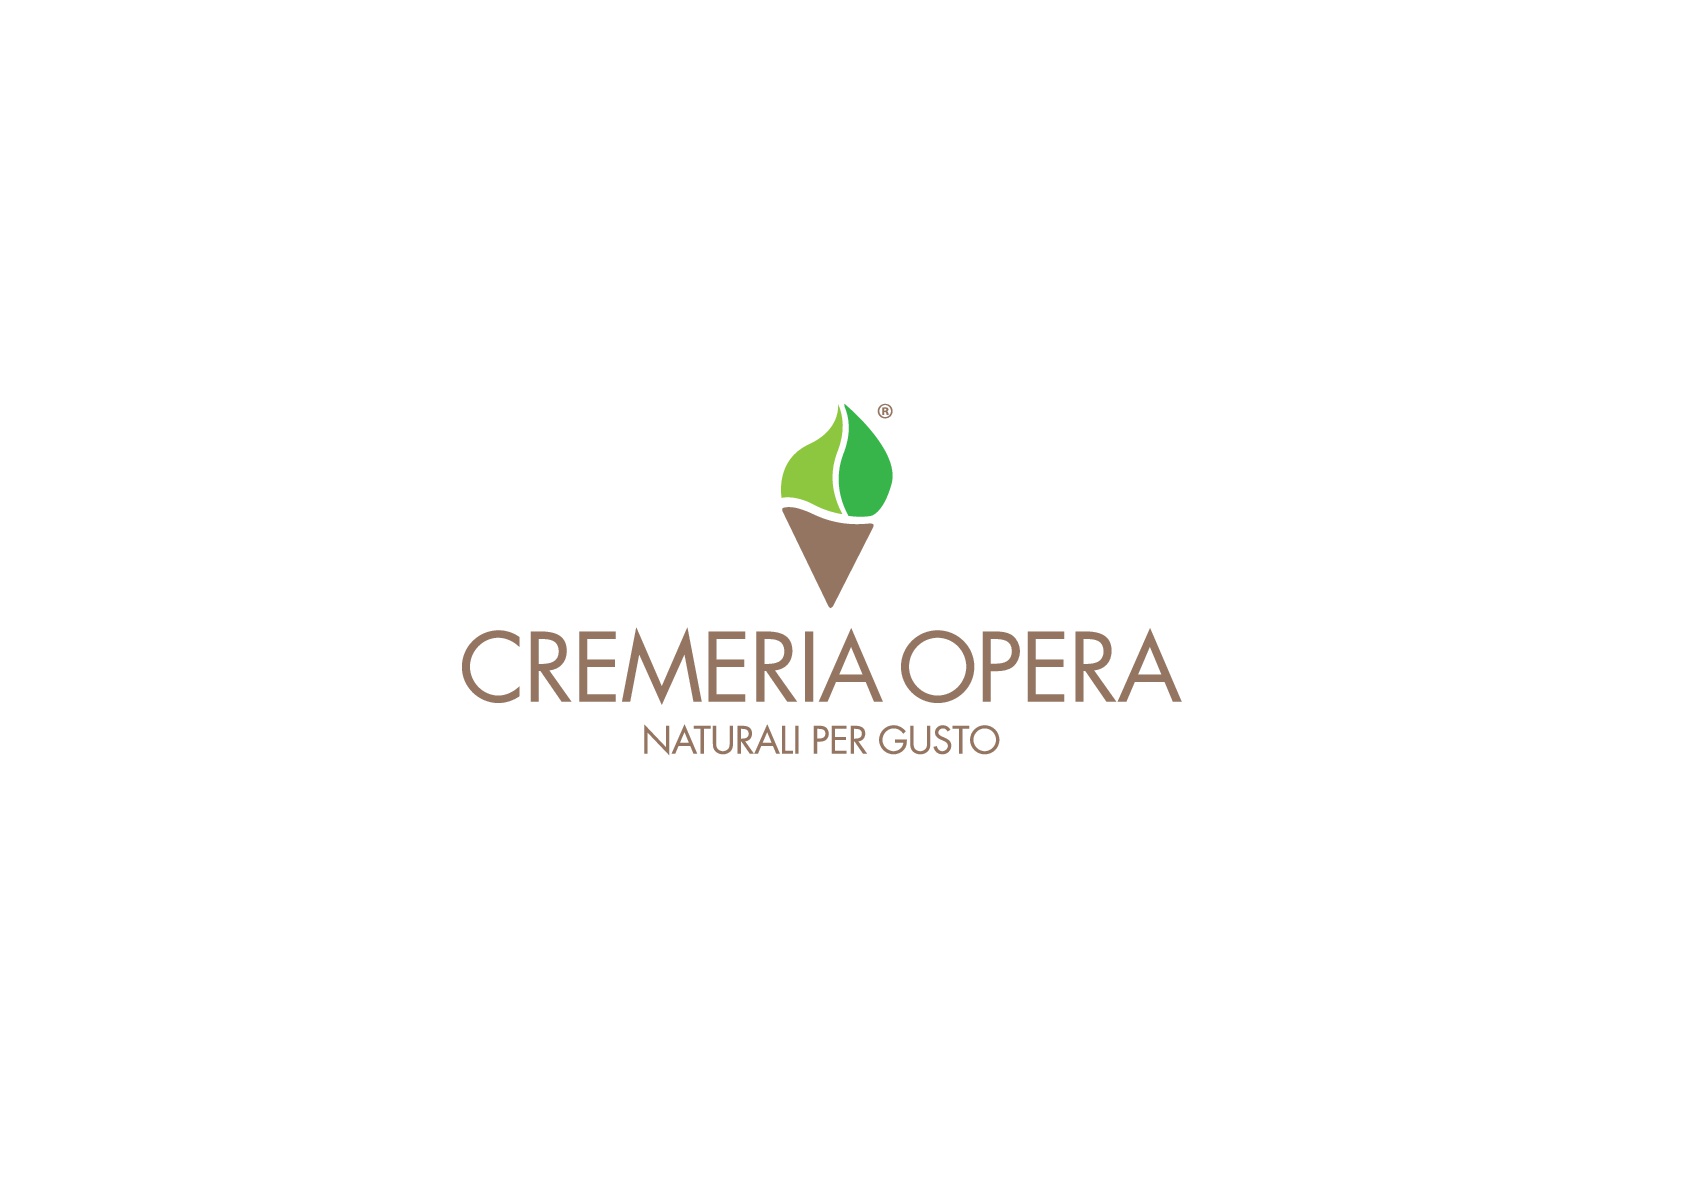 Cremeria Opera